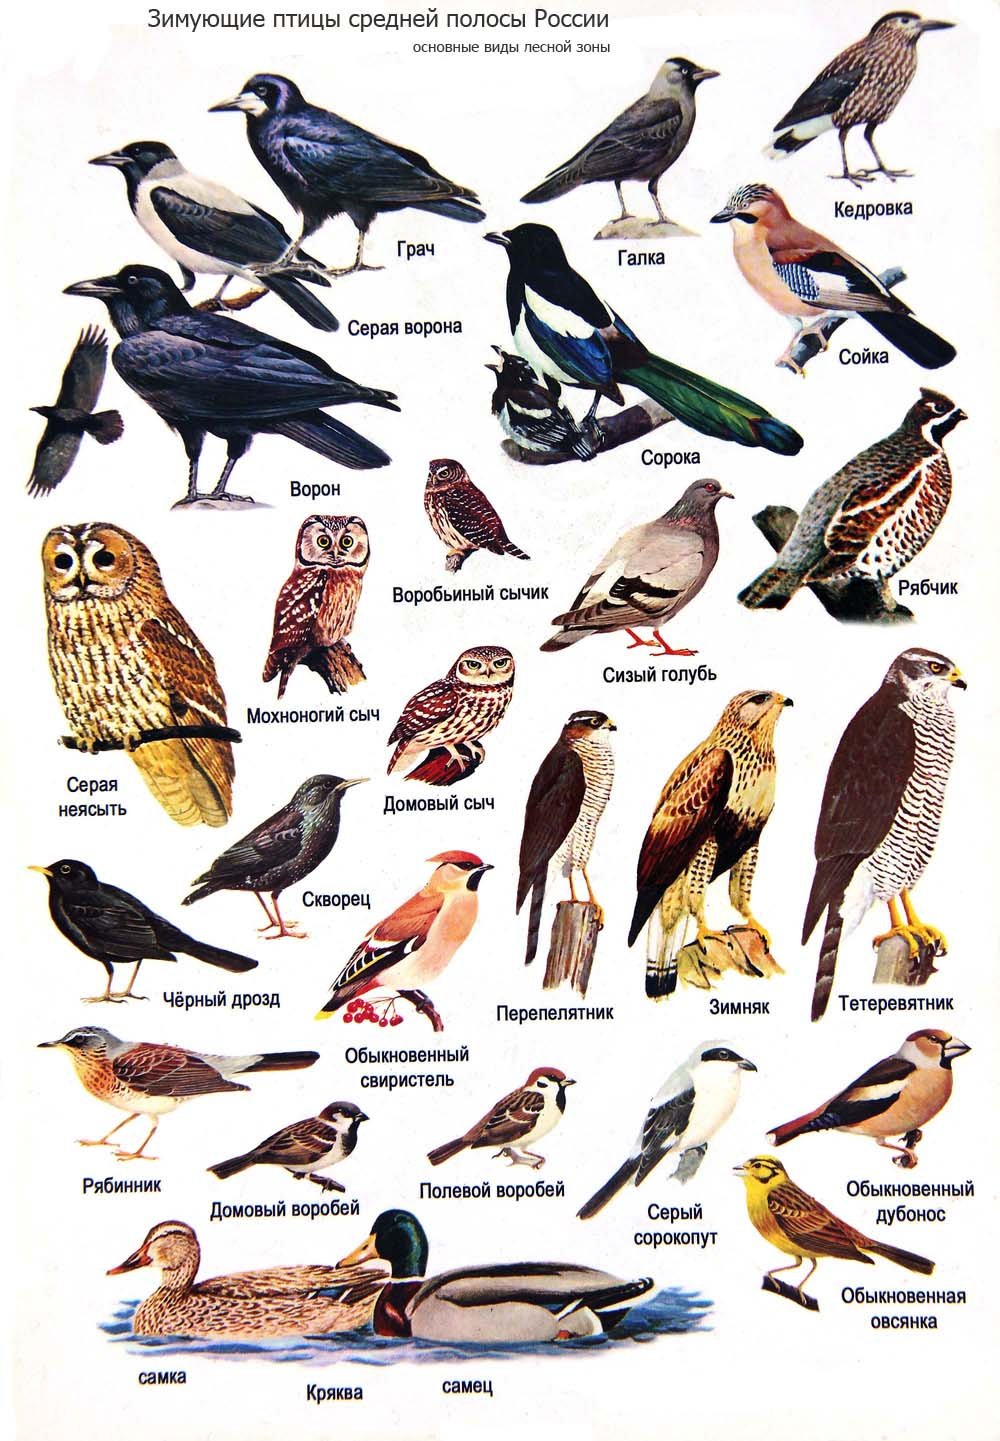 Птицы обитающие в москве летом фото и названия